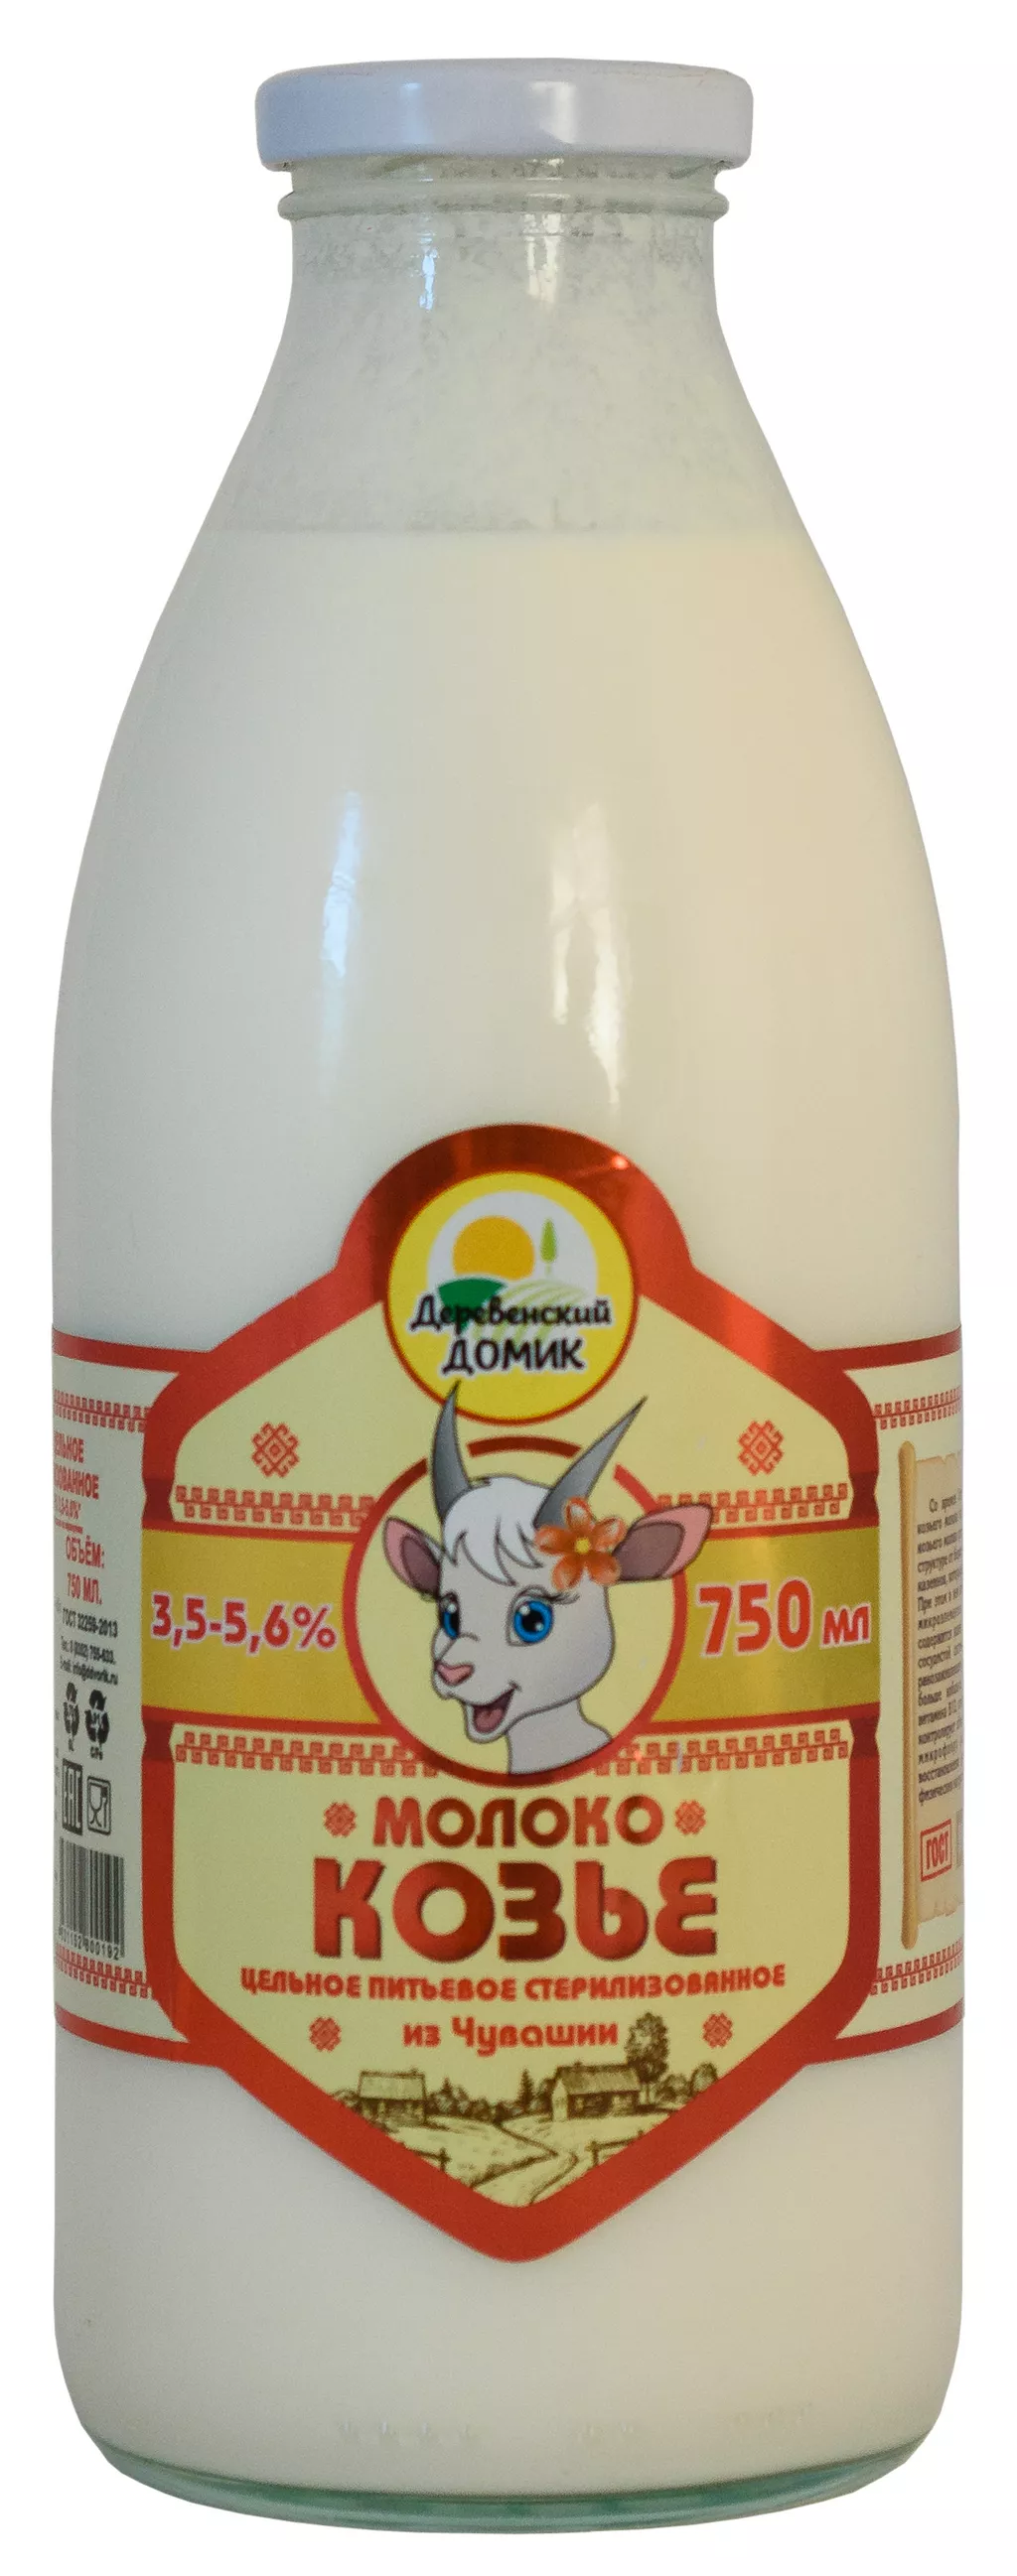  молоко сырое  козье в Чебоксарах и Чувашии